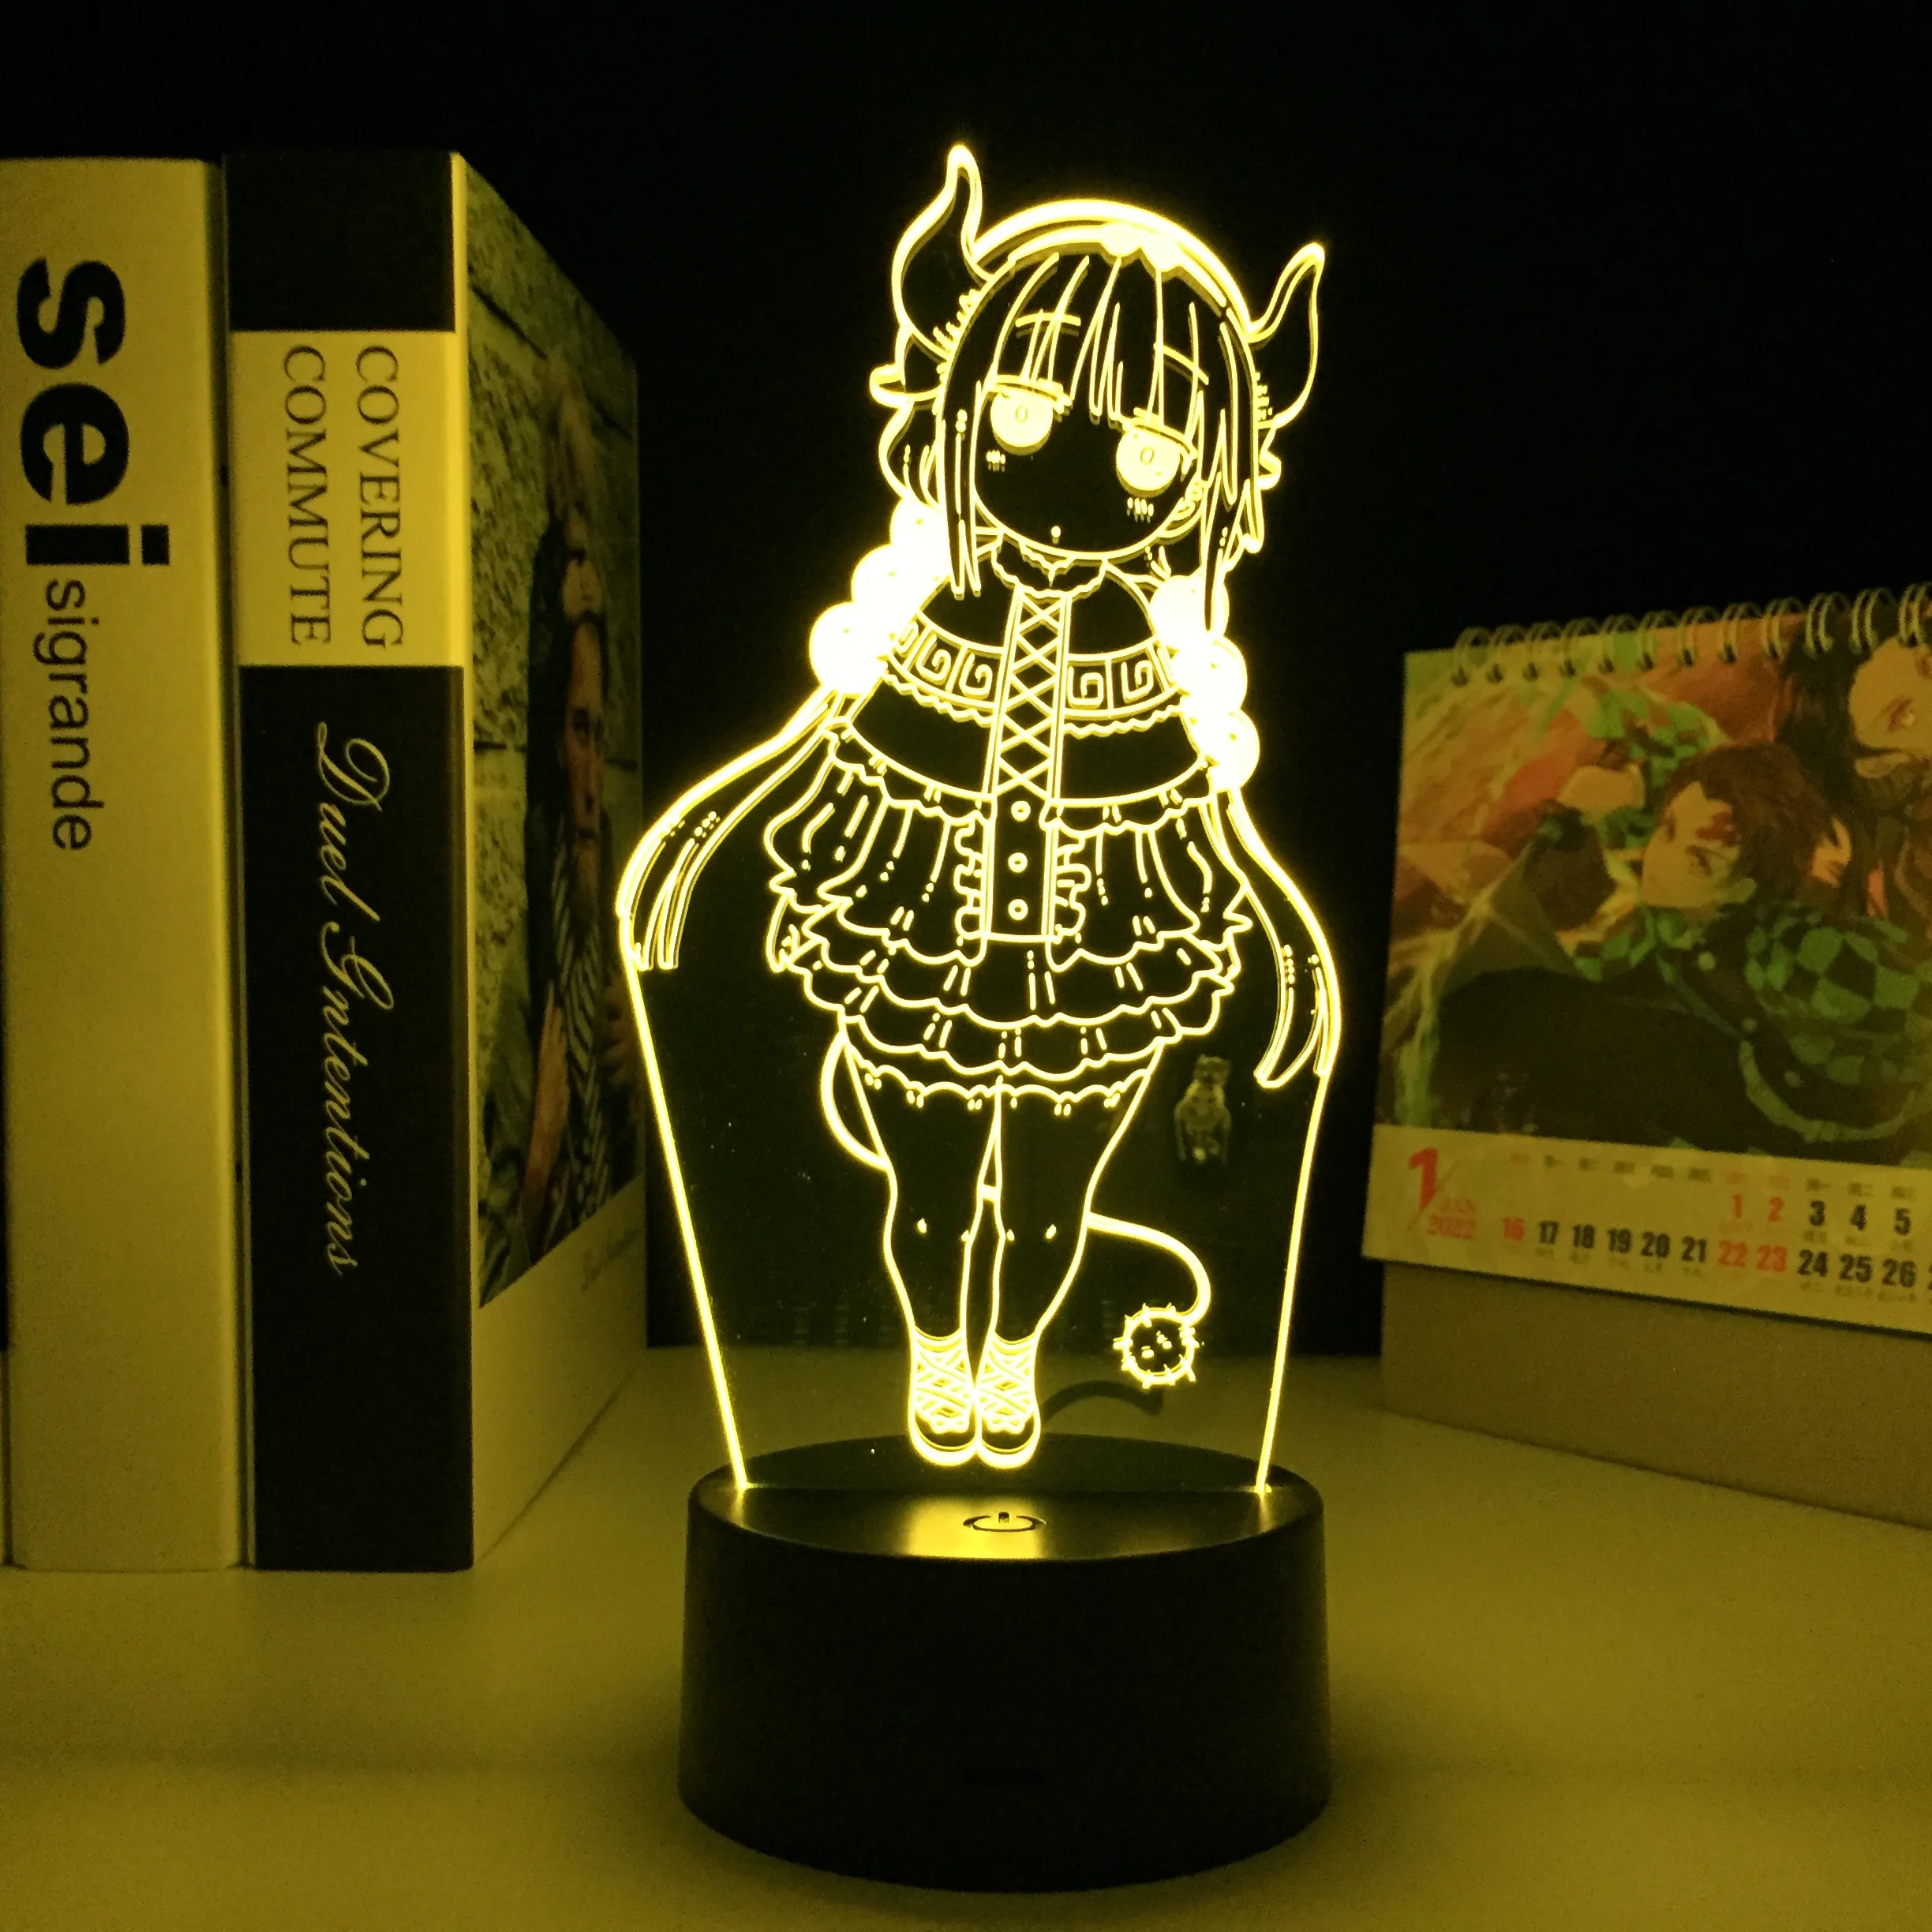 

Аниме Miss Kobayashi's Dragon Maid, фигурка Kanna, светодиодный ночник для спальни, украшение, подарок на день рождения, лампа манга Kanna светильник